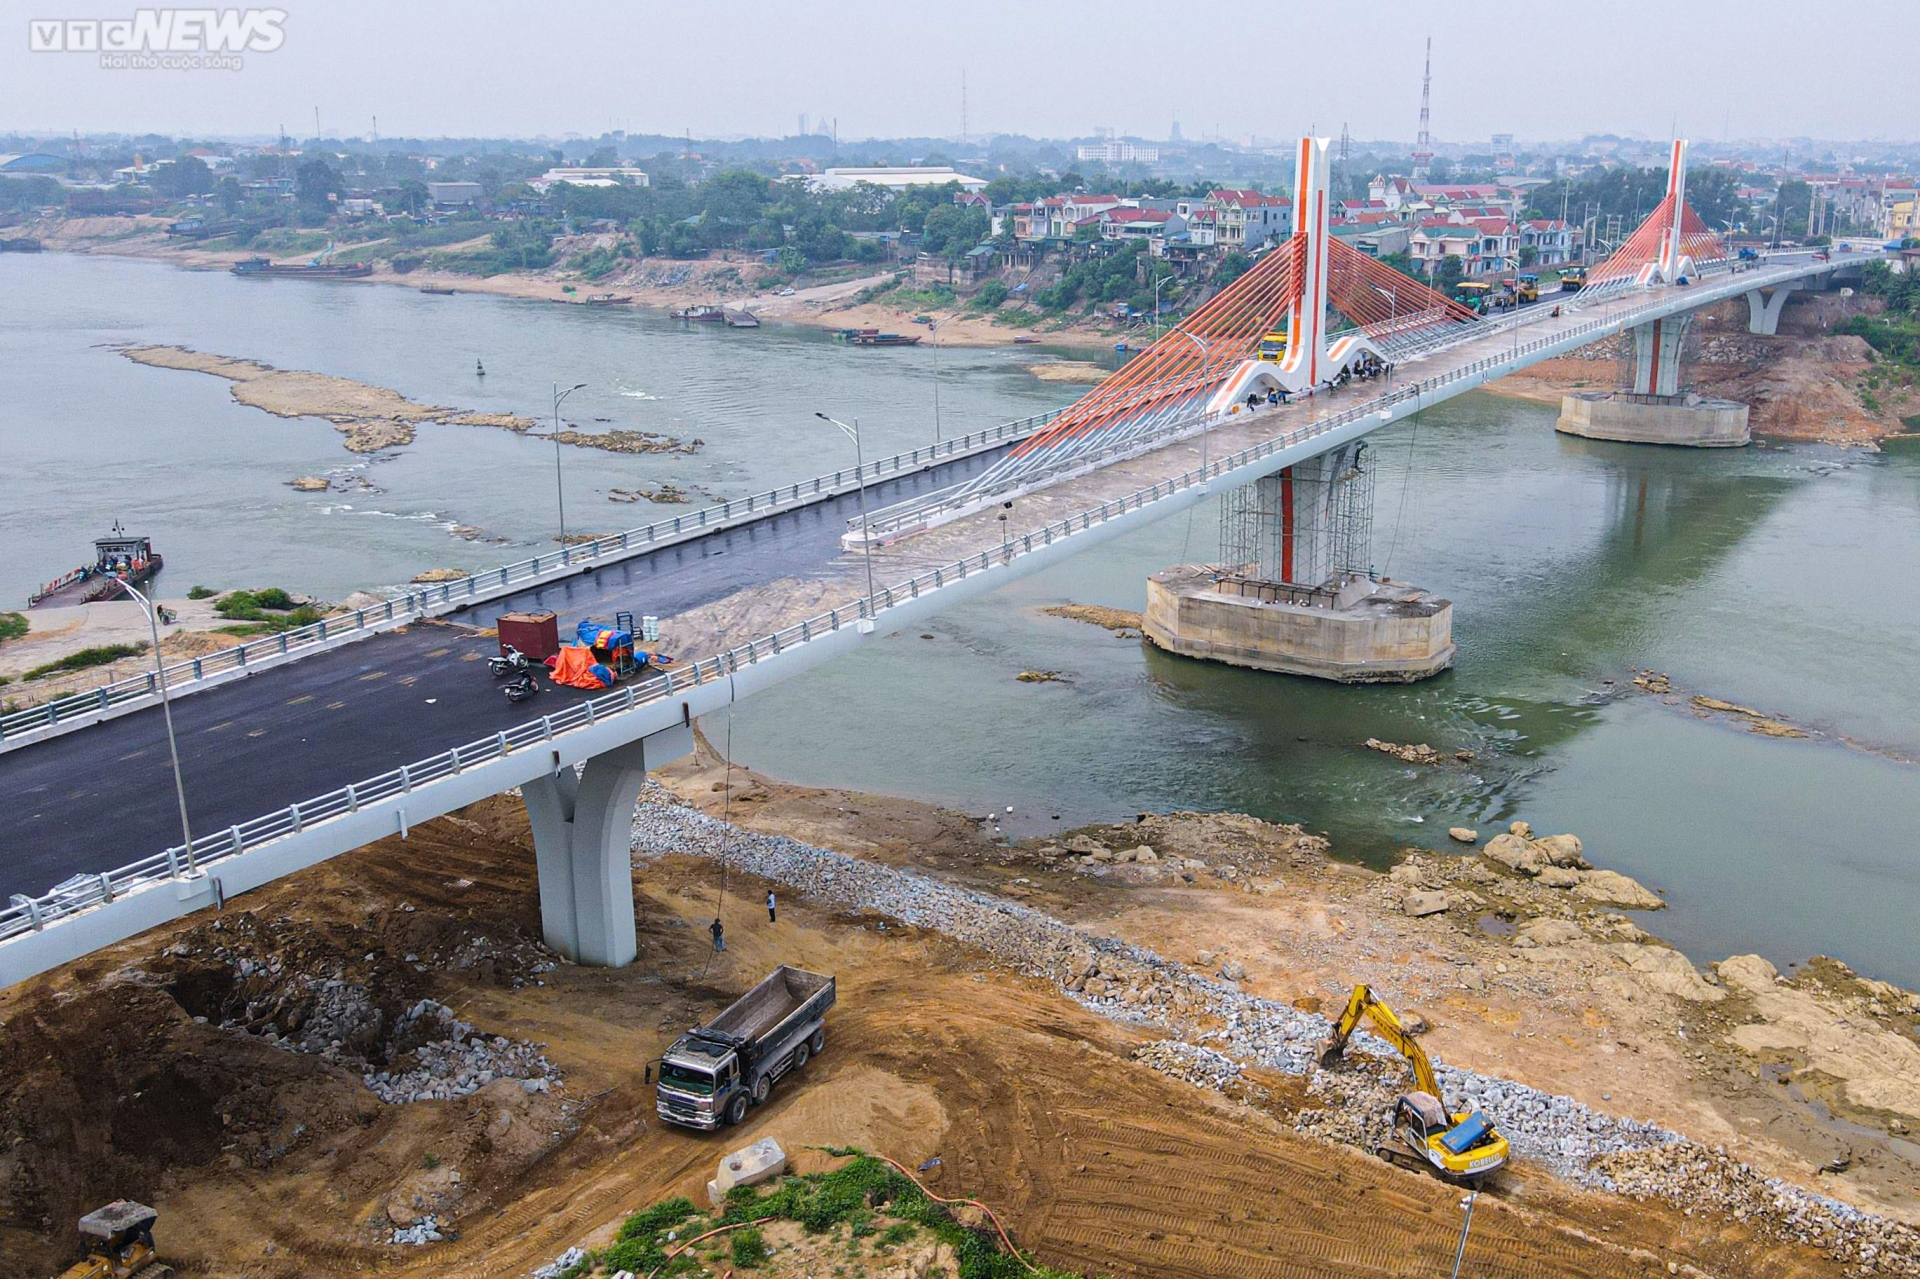 Chiêm ngưỡng cây cầu 540 tỷ đồng nối 2 tỉnh Vĩnh Phúc và Phú Thọ - Ảnh 3.